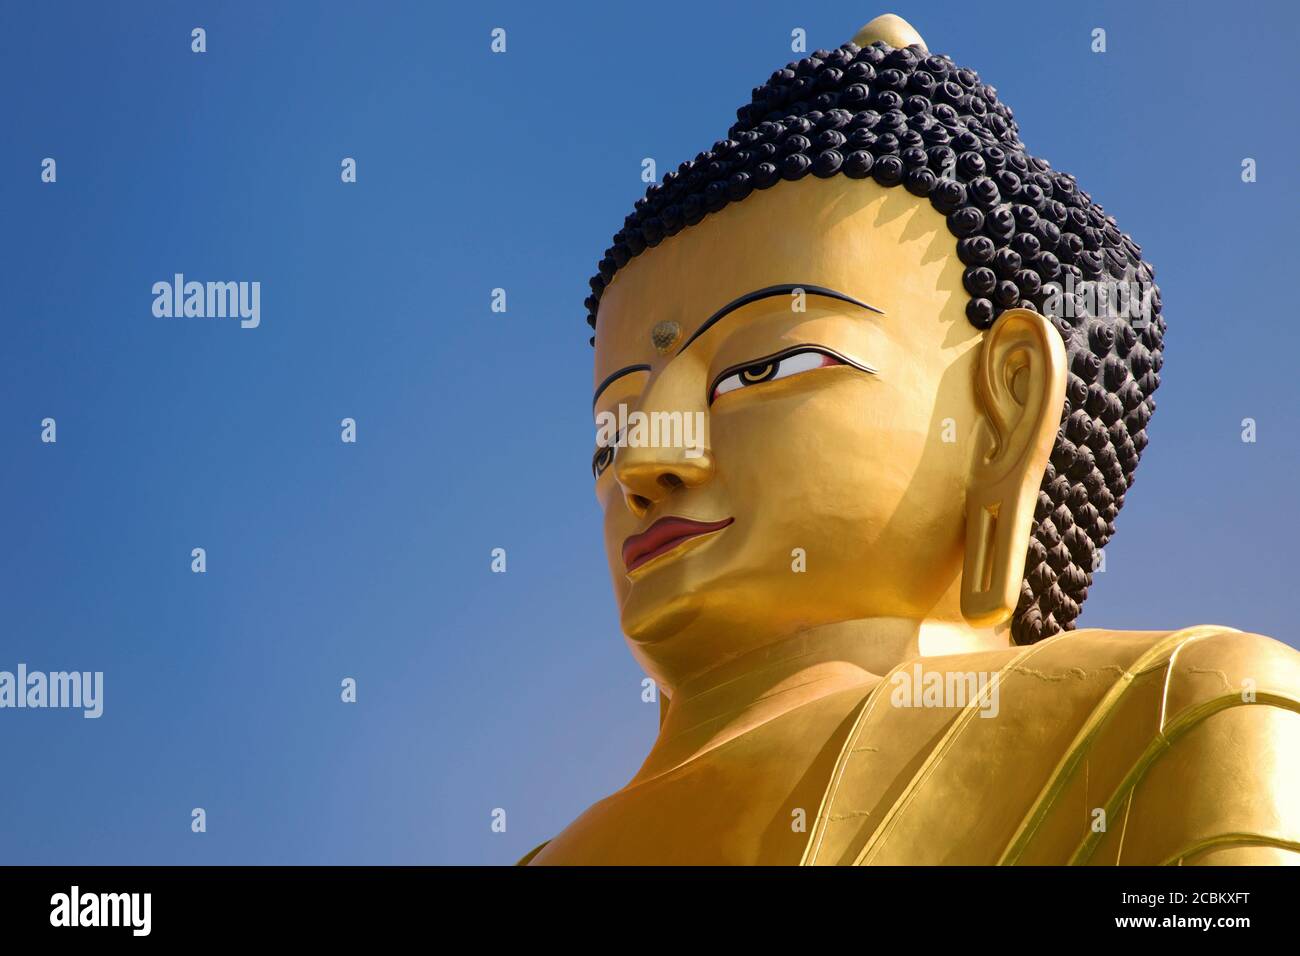 Giant statue of Buddha, Kathmandu, Nepal Stock Photo